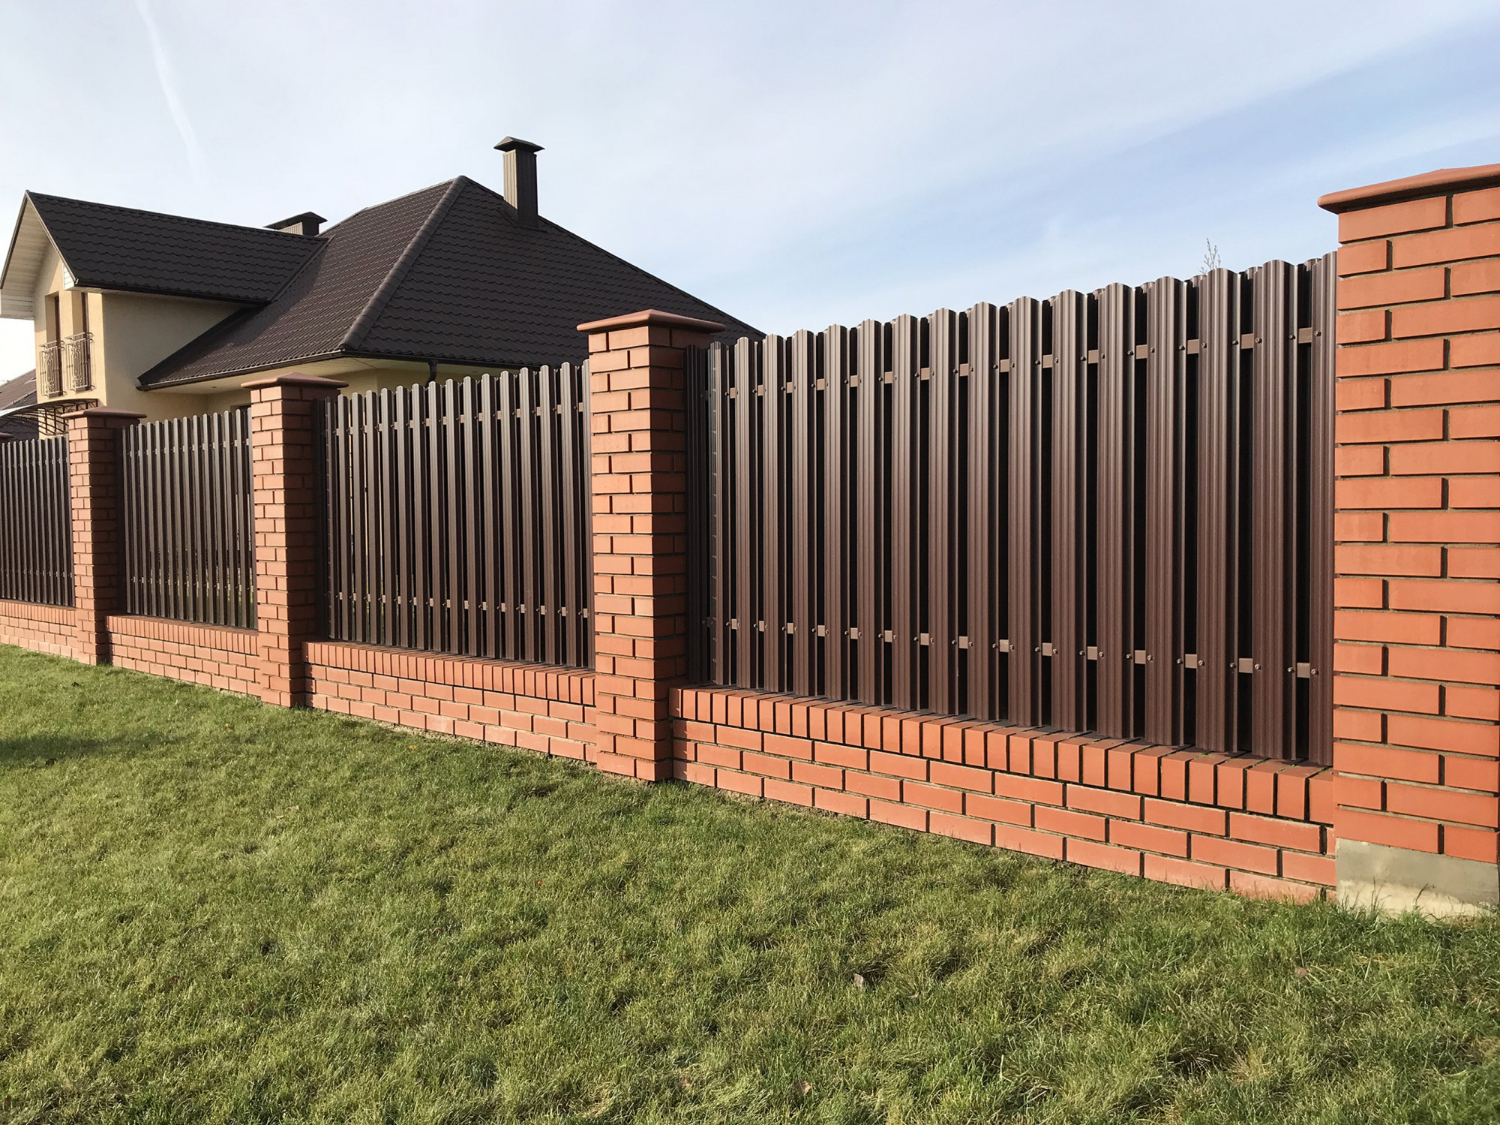 Kombinasi desain pagar rumah dari besi dan bata membuat hunian terkesan lebih hangat.